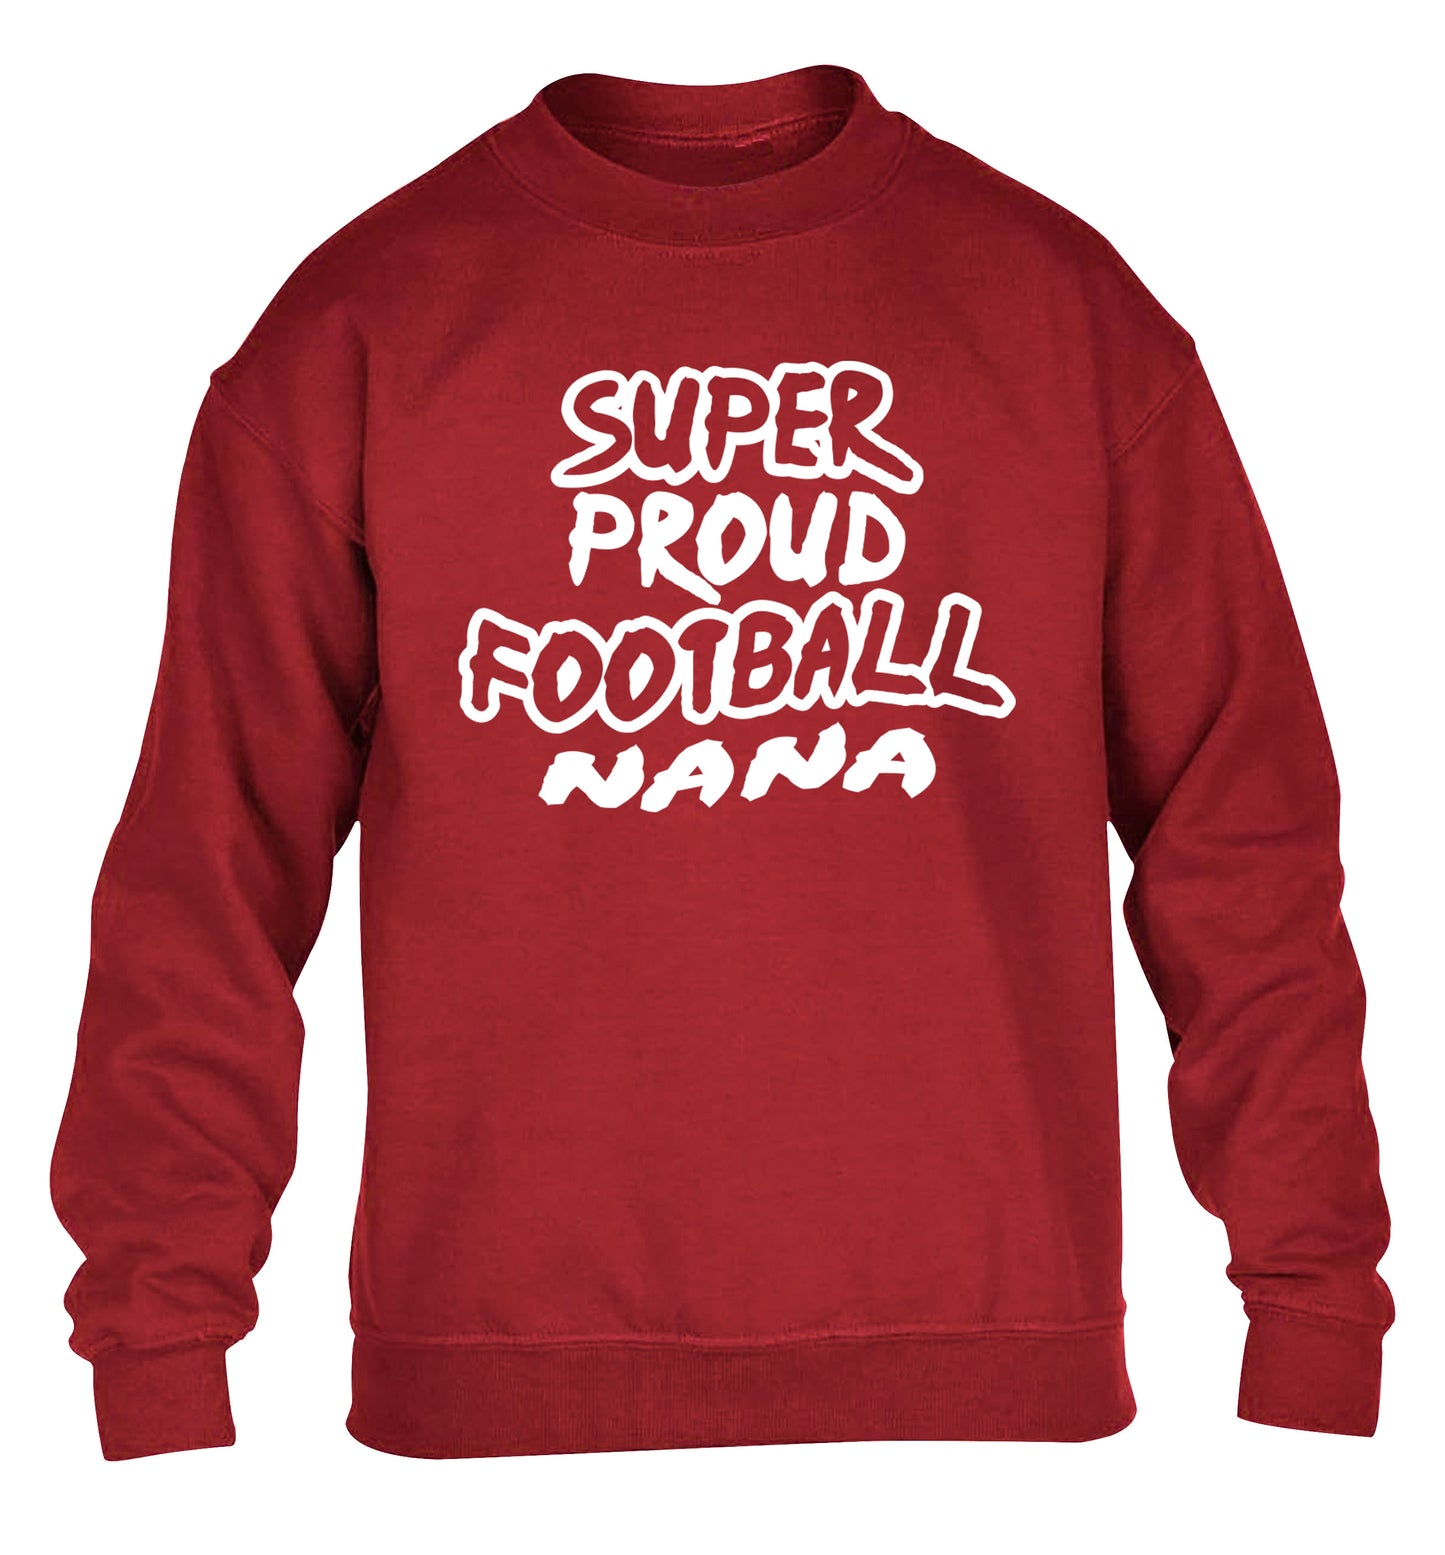 Super proud football nana children's grey sweater 12-14 Years